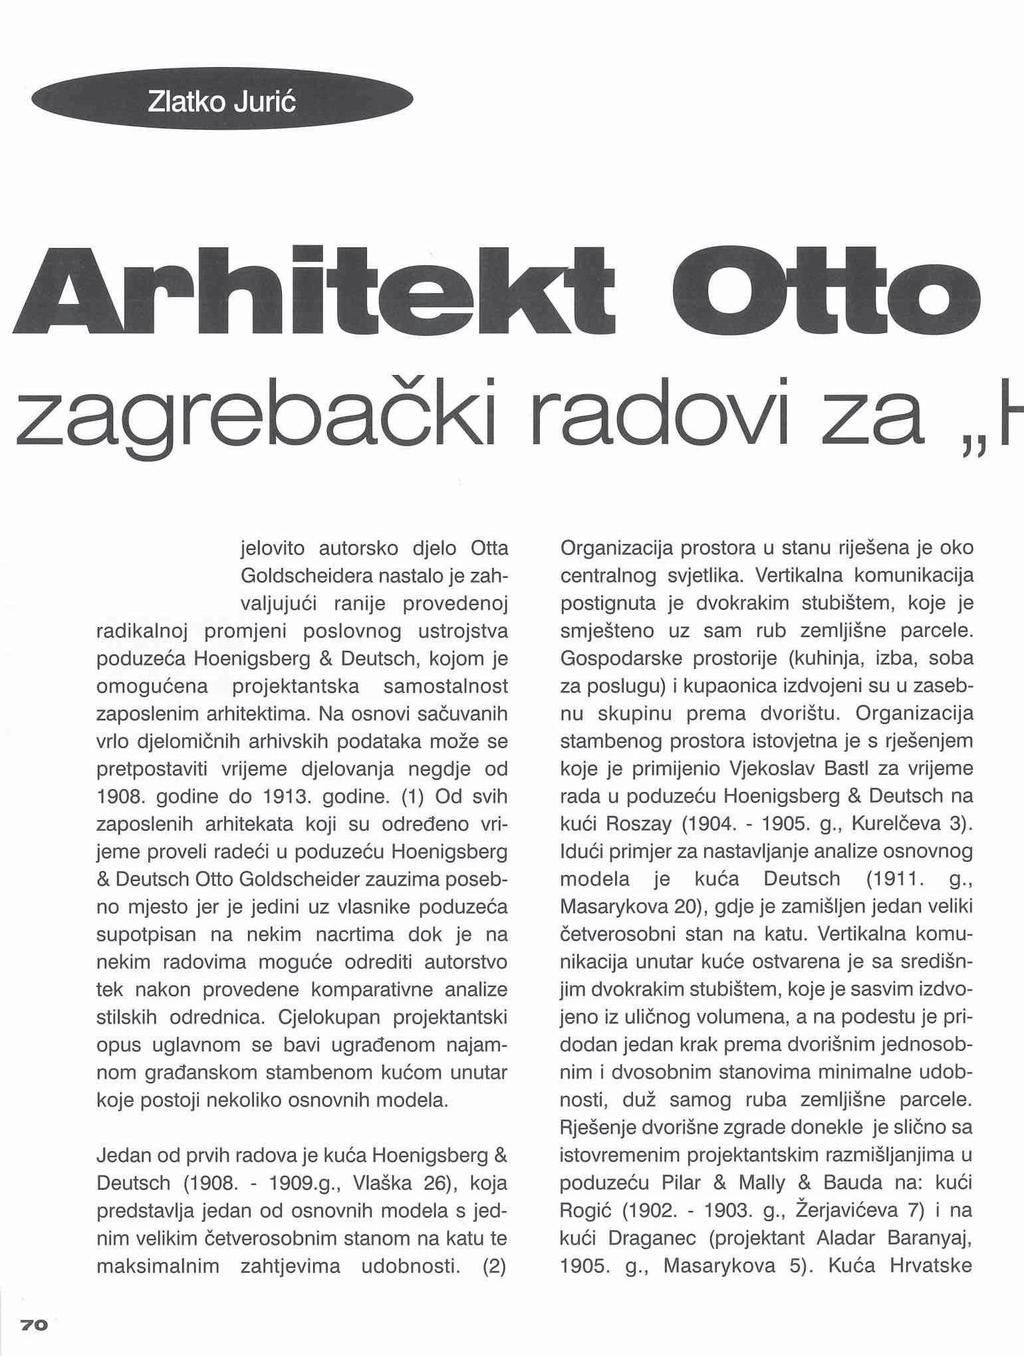 Arhitekt Otto zagrebački radovi za,, Cjelovito autorsko djelo Otta Goldscheidera nastalo je zahvaljujući ranije provedenoj radikalnoj promjeni poslovnog ustrojstva poduzeća Hoenigsberg & Deutsch,